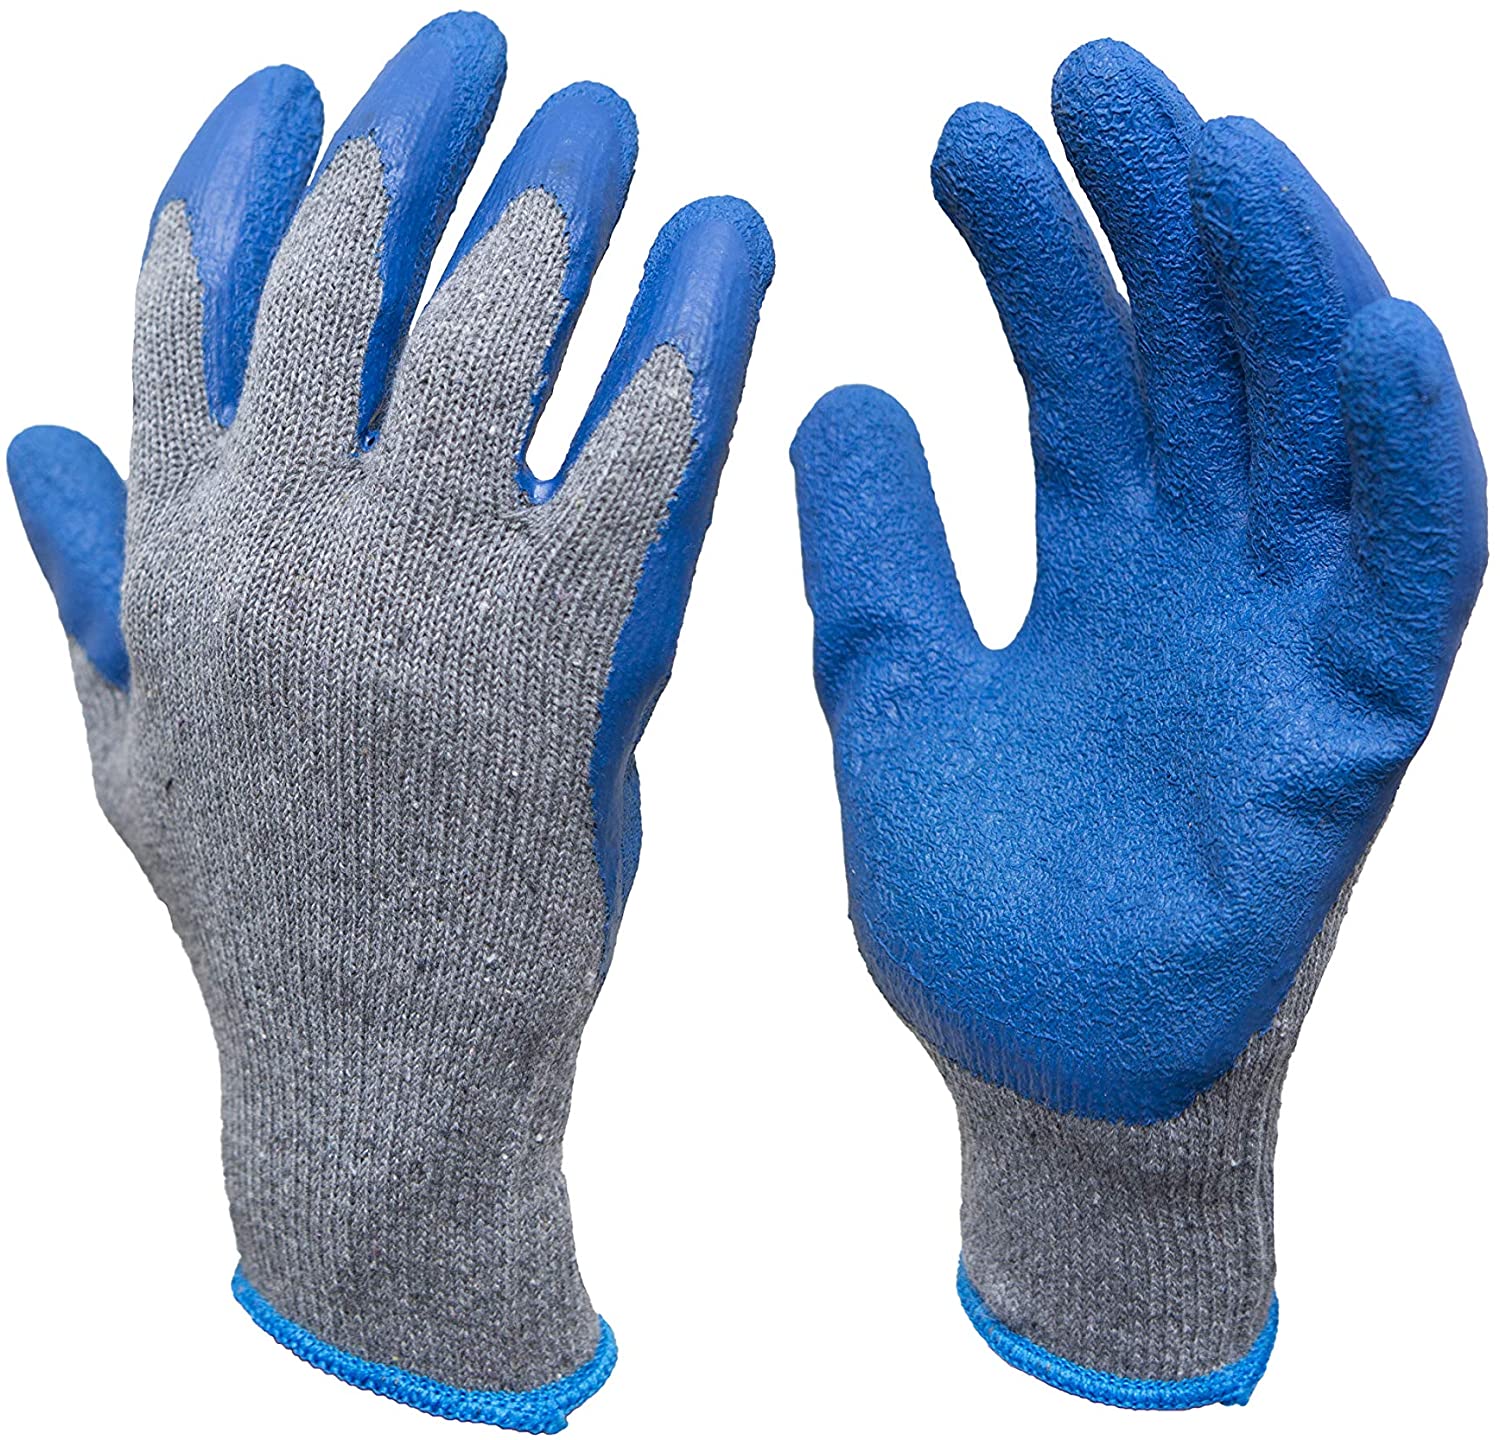 Detail Images Of Gloves Nomer 2